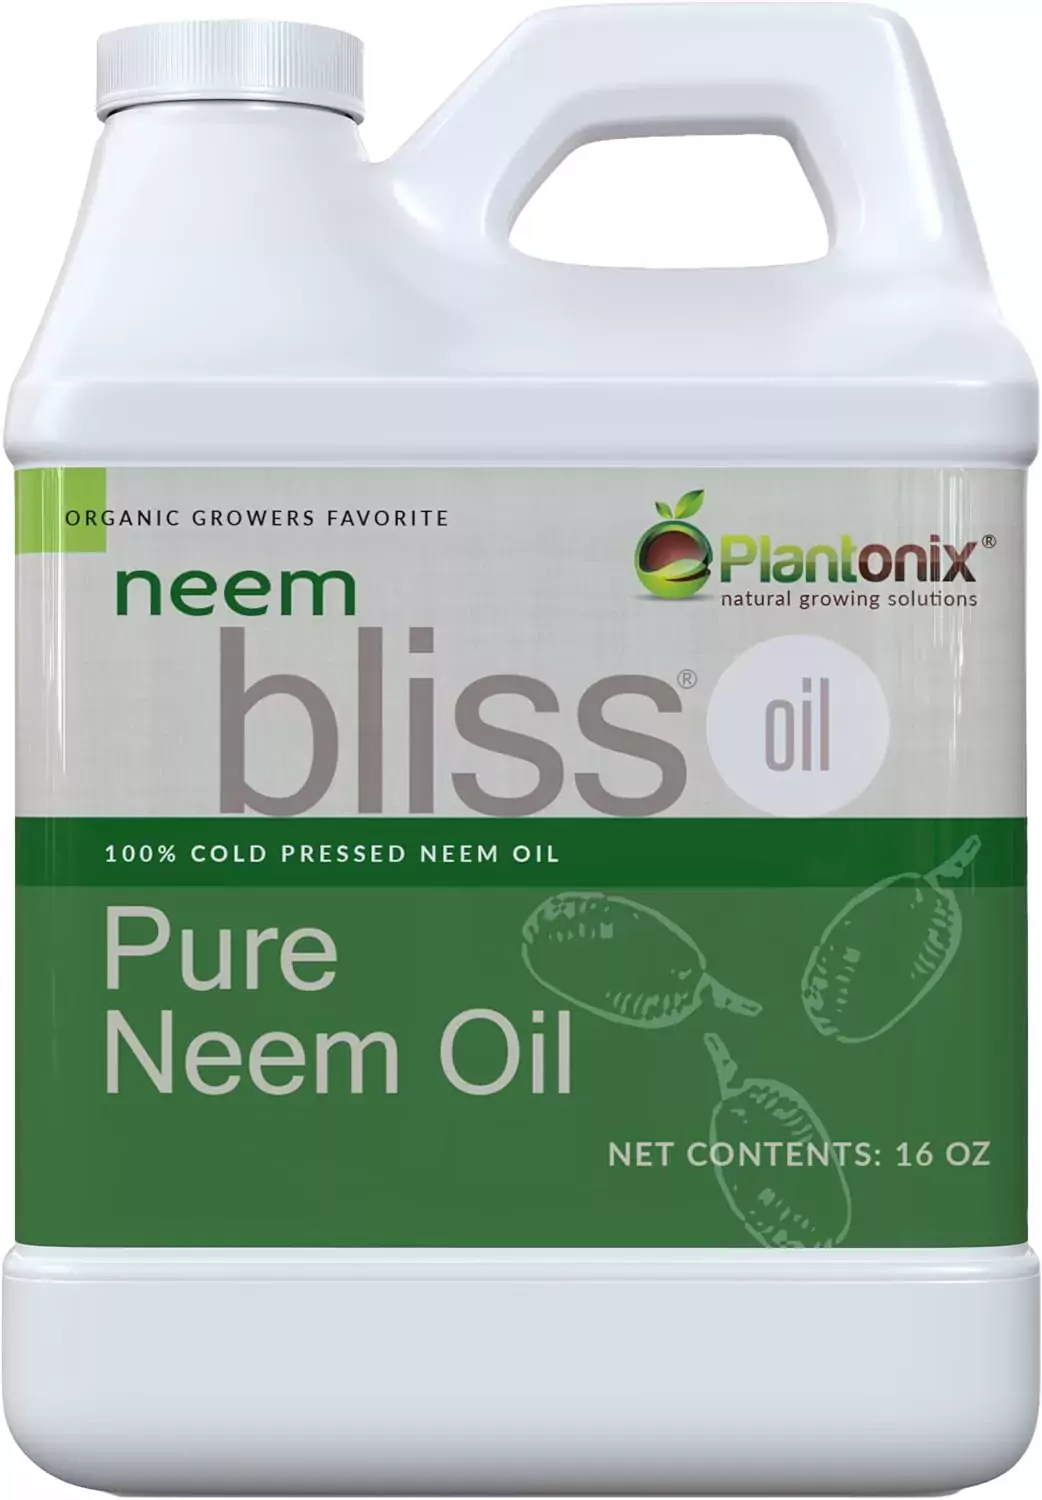 neem oil for roses